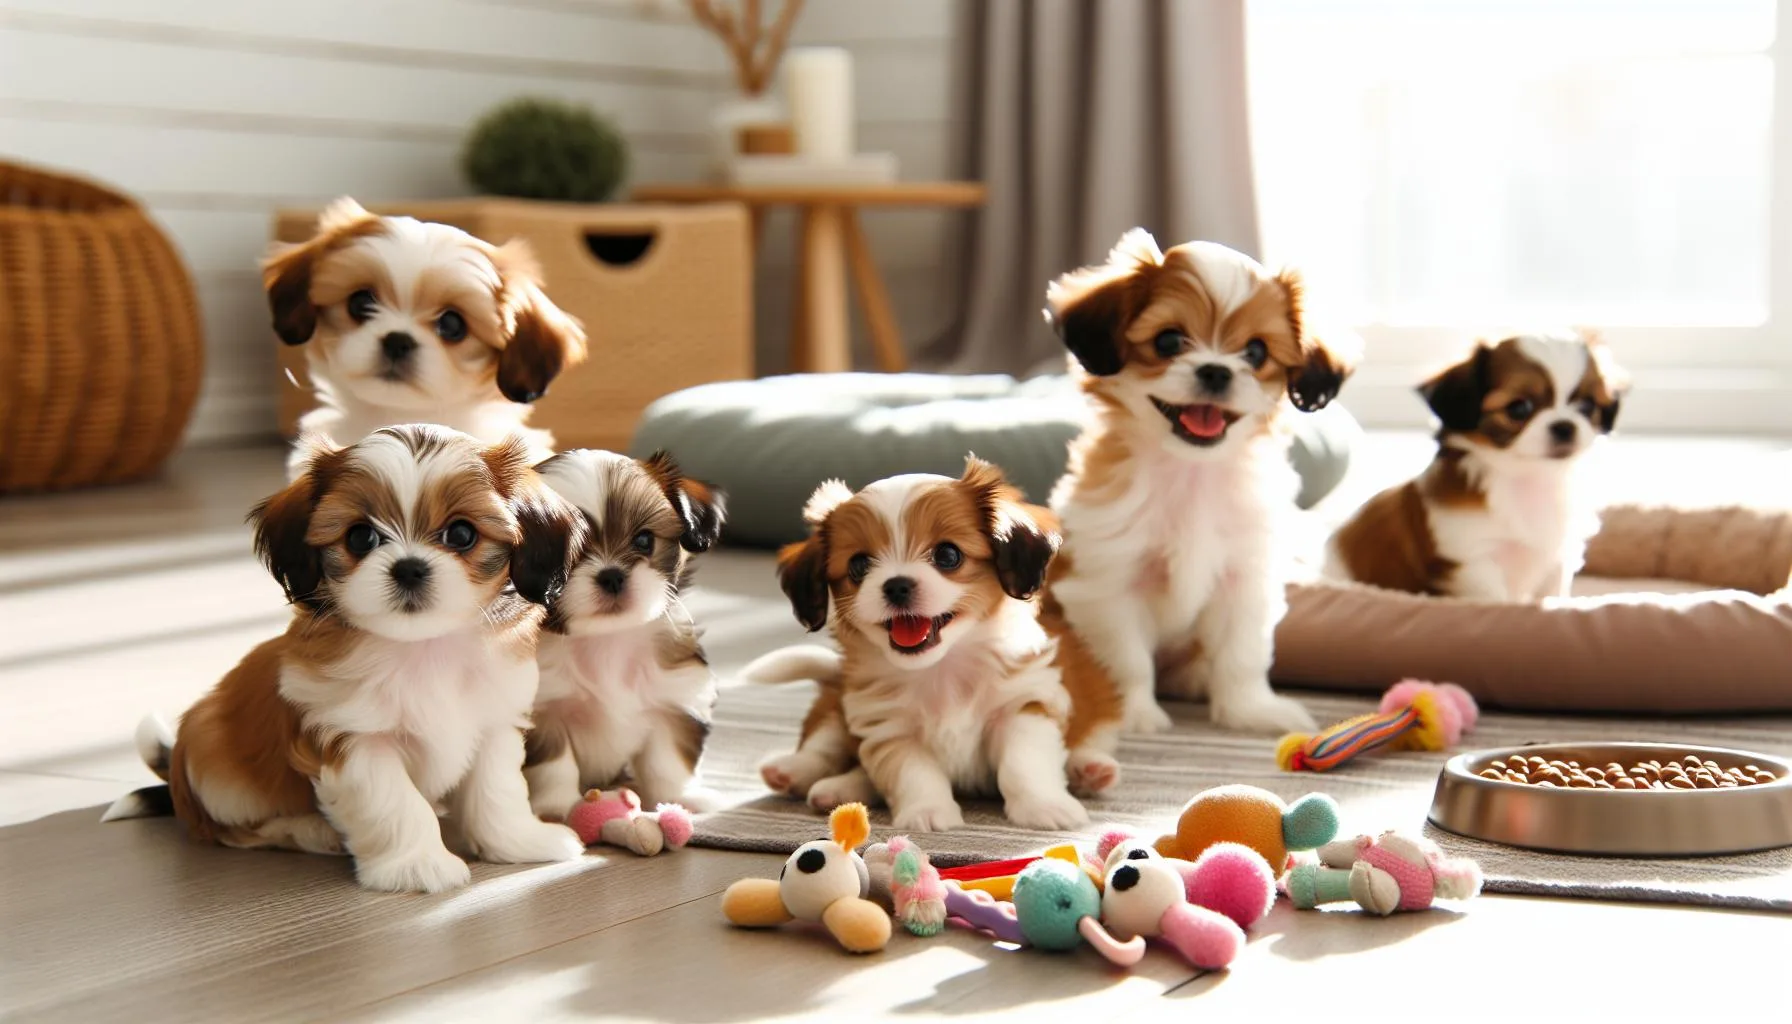 Shih Tzu Chihuahua Mix Puppies: Buy Now!